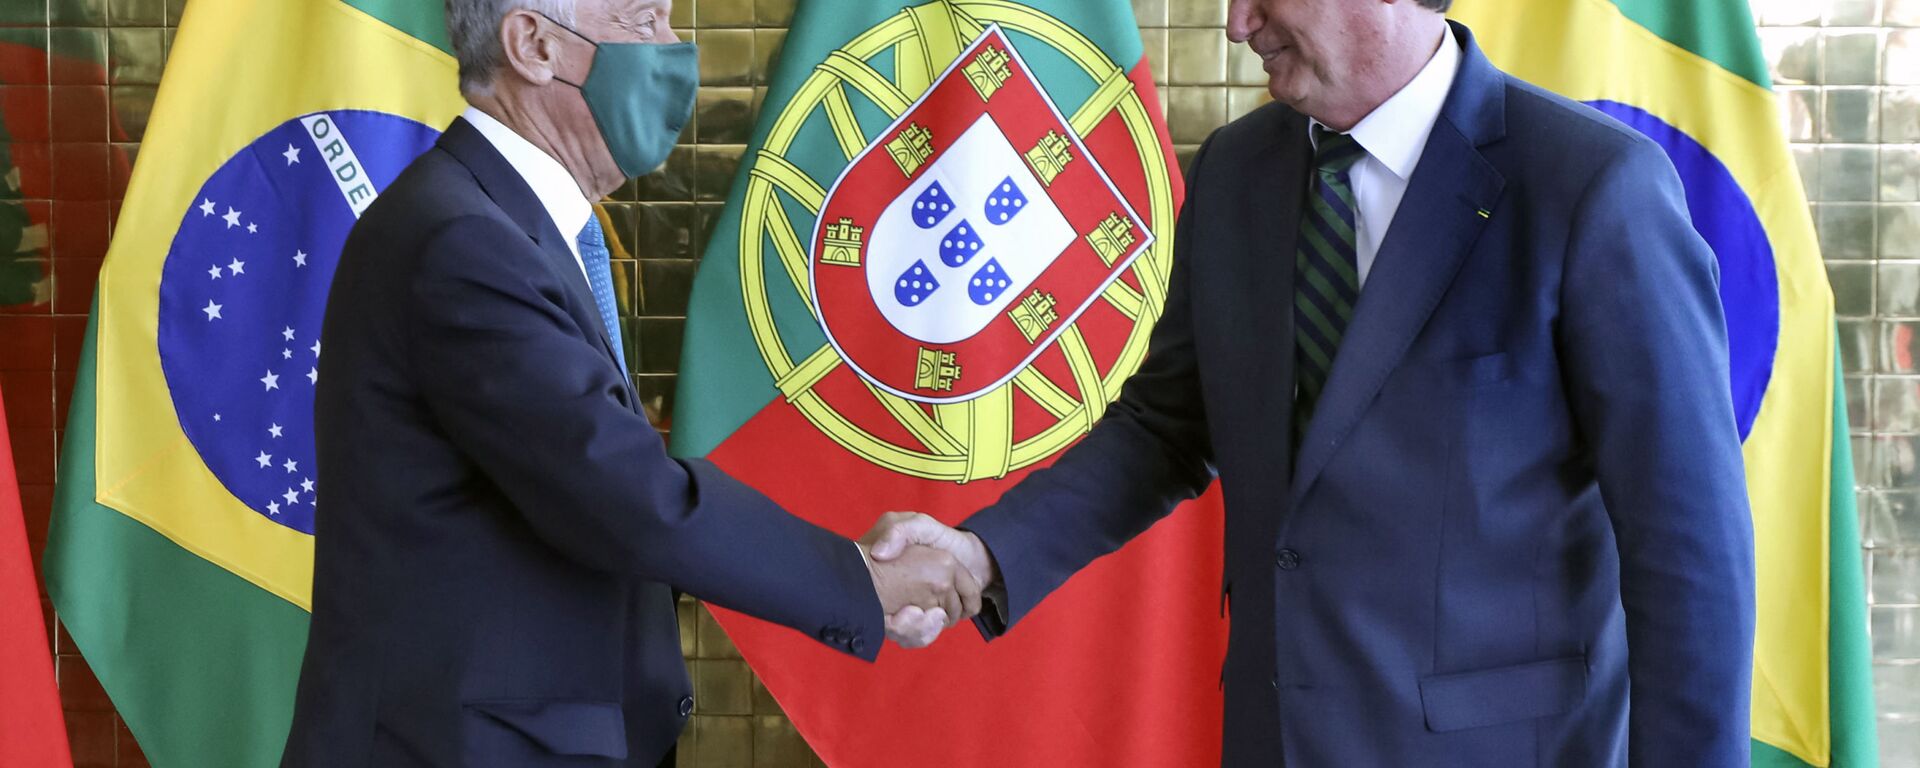 Marcelo Rebelo de Sousa, presidente do Portugal, cumprimenta Jair Bolsonaro, em visita ao Brasil, em 2 de agosto de 2021 - Sputnik Brasil, 1920, 02.08.2021